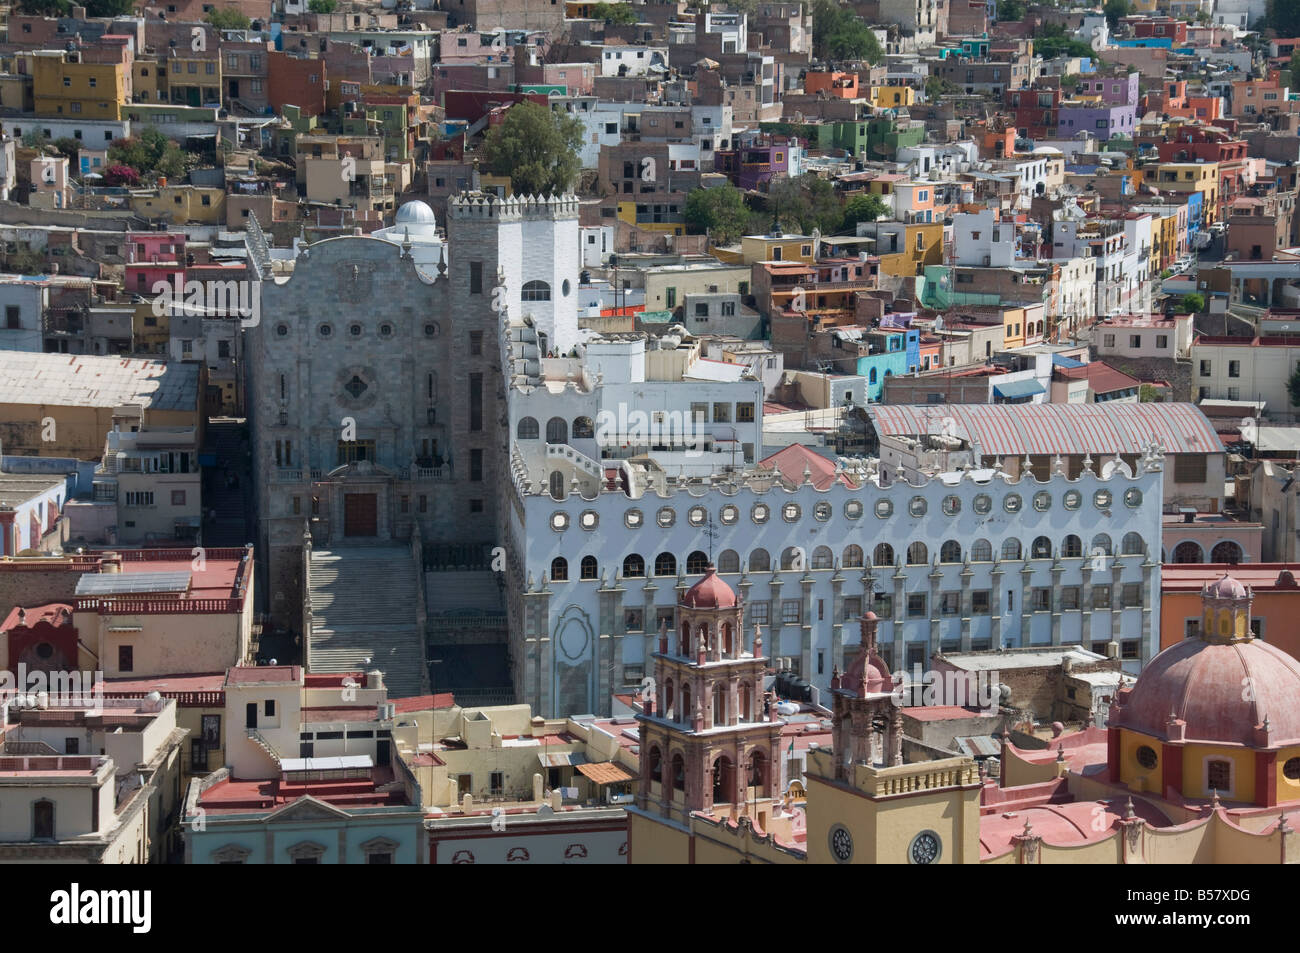 University of Guanajuato, the blue grey building, in Guanajuato, a UNESCO World Heritage Site, Guanajuato State, Mexico Stock Photo